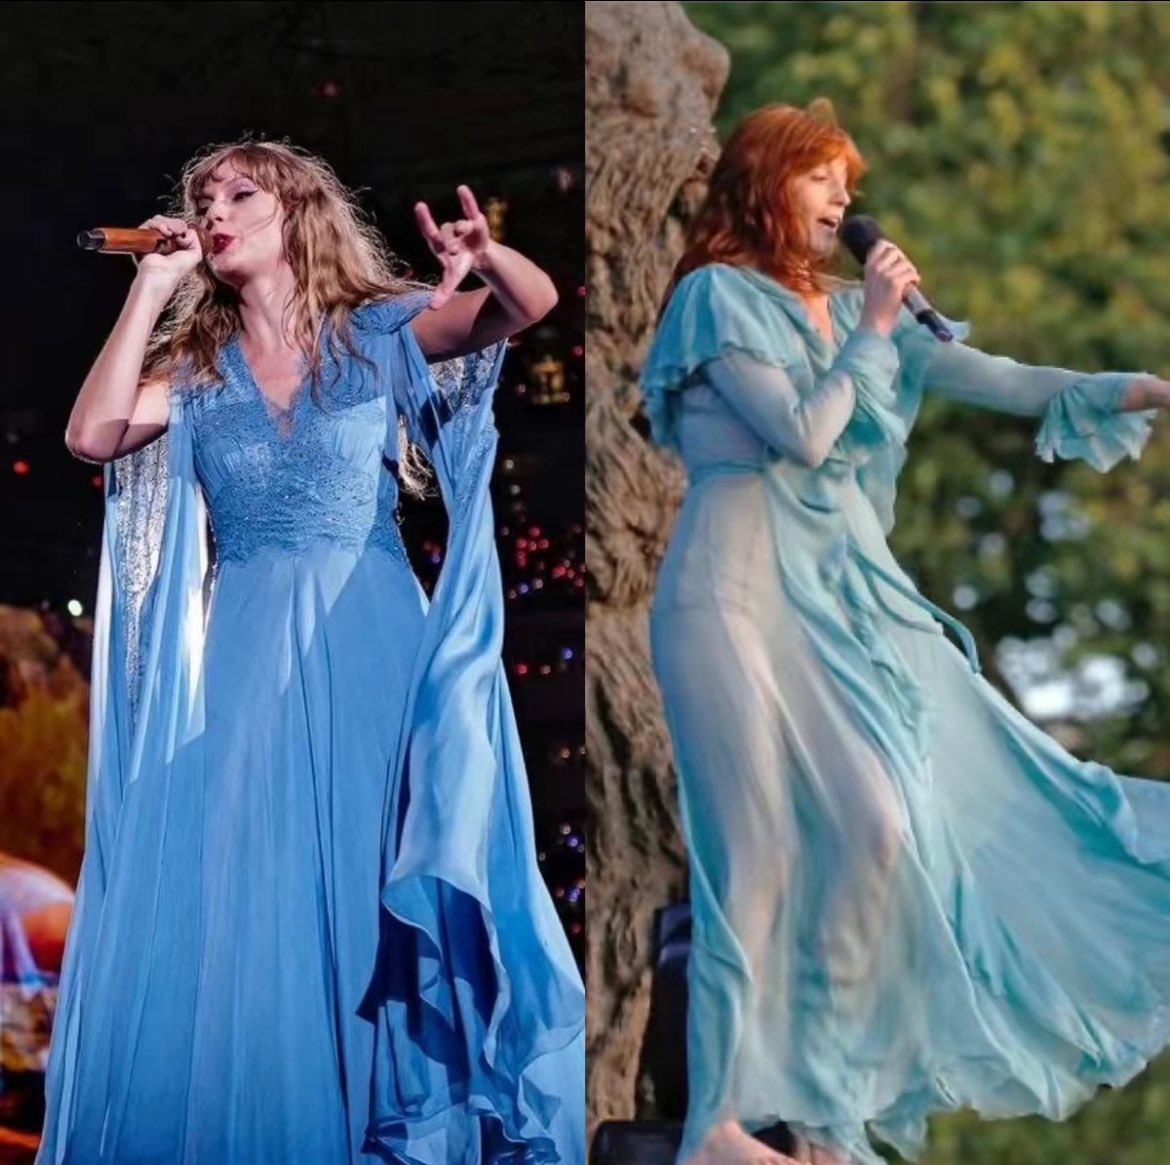 Florenceの衣装をテイラーが真似というかほぼ同じの作ってThe Eras tourでのFolkloreに使ってたってさっき知って伏線回収エグすぎるって衝撃受けた。